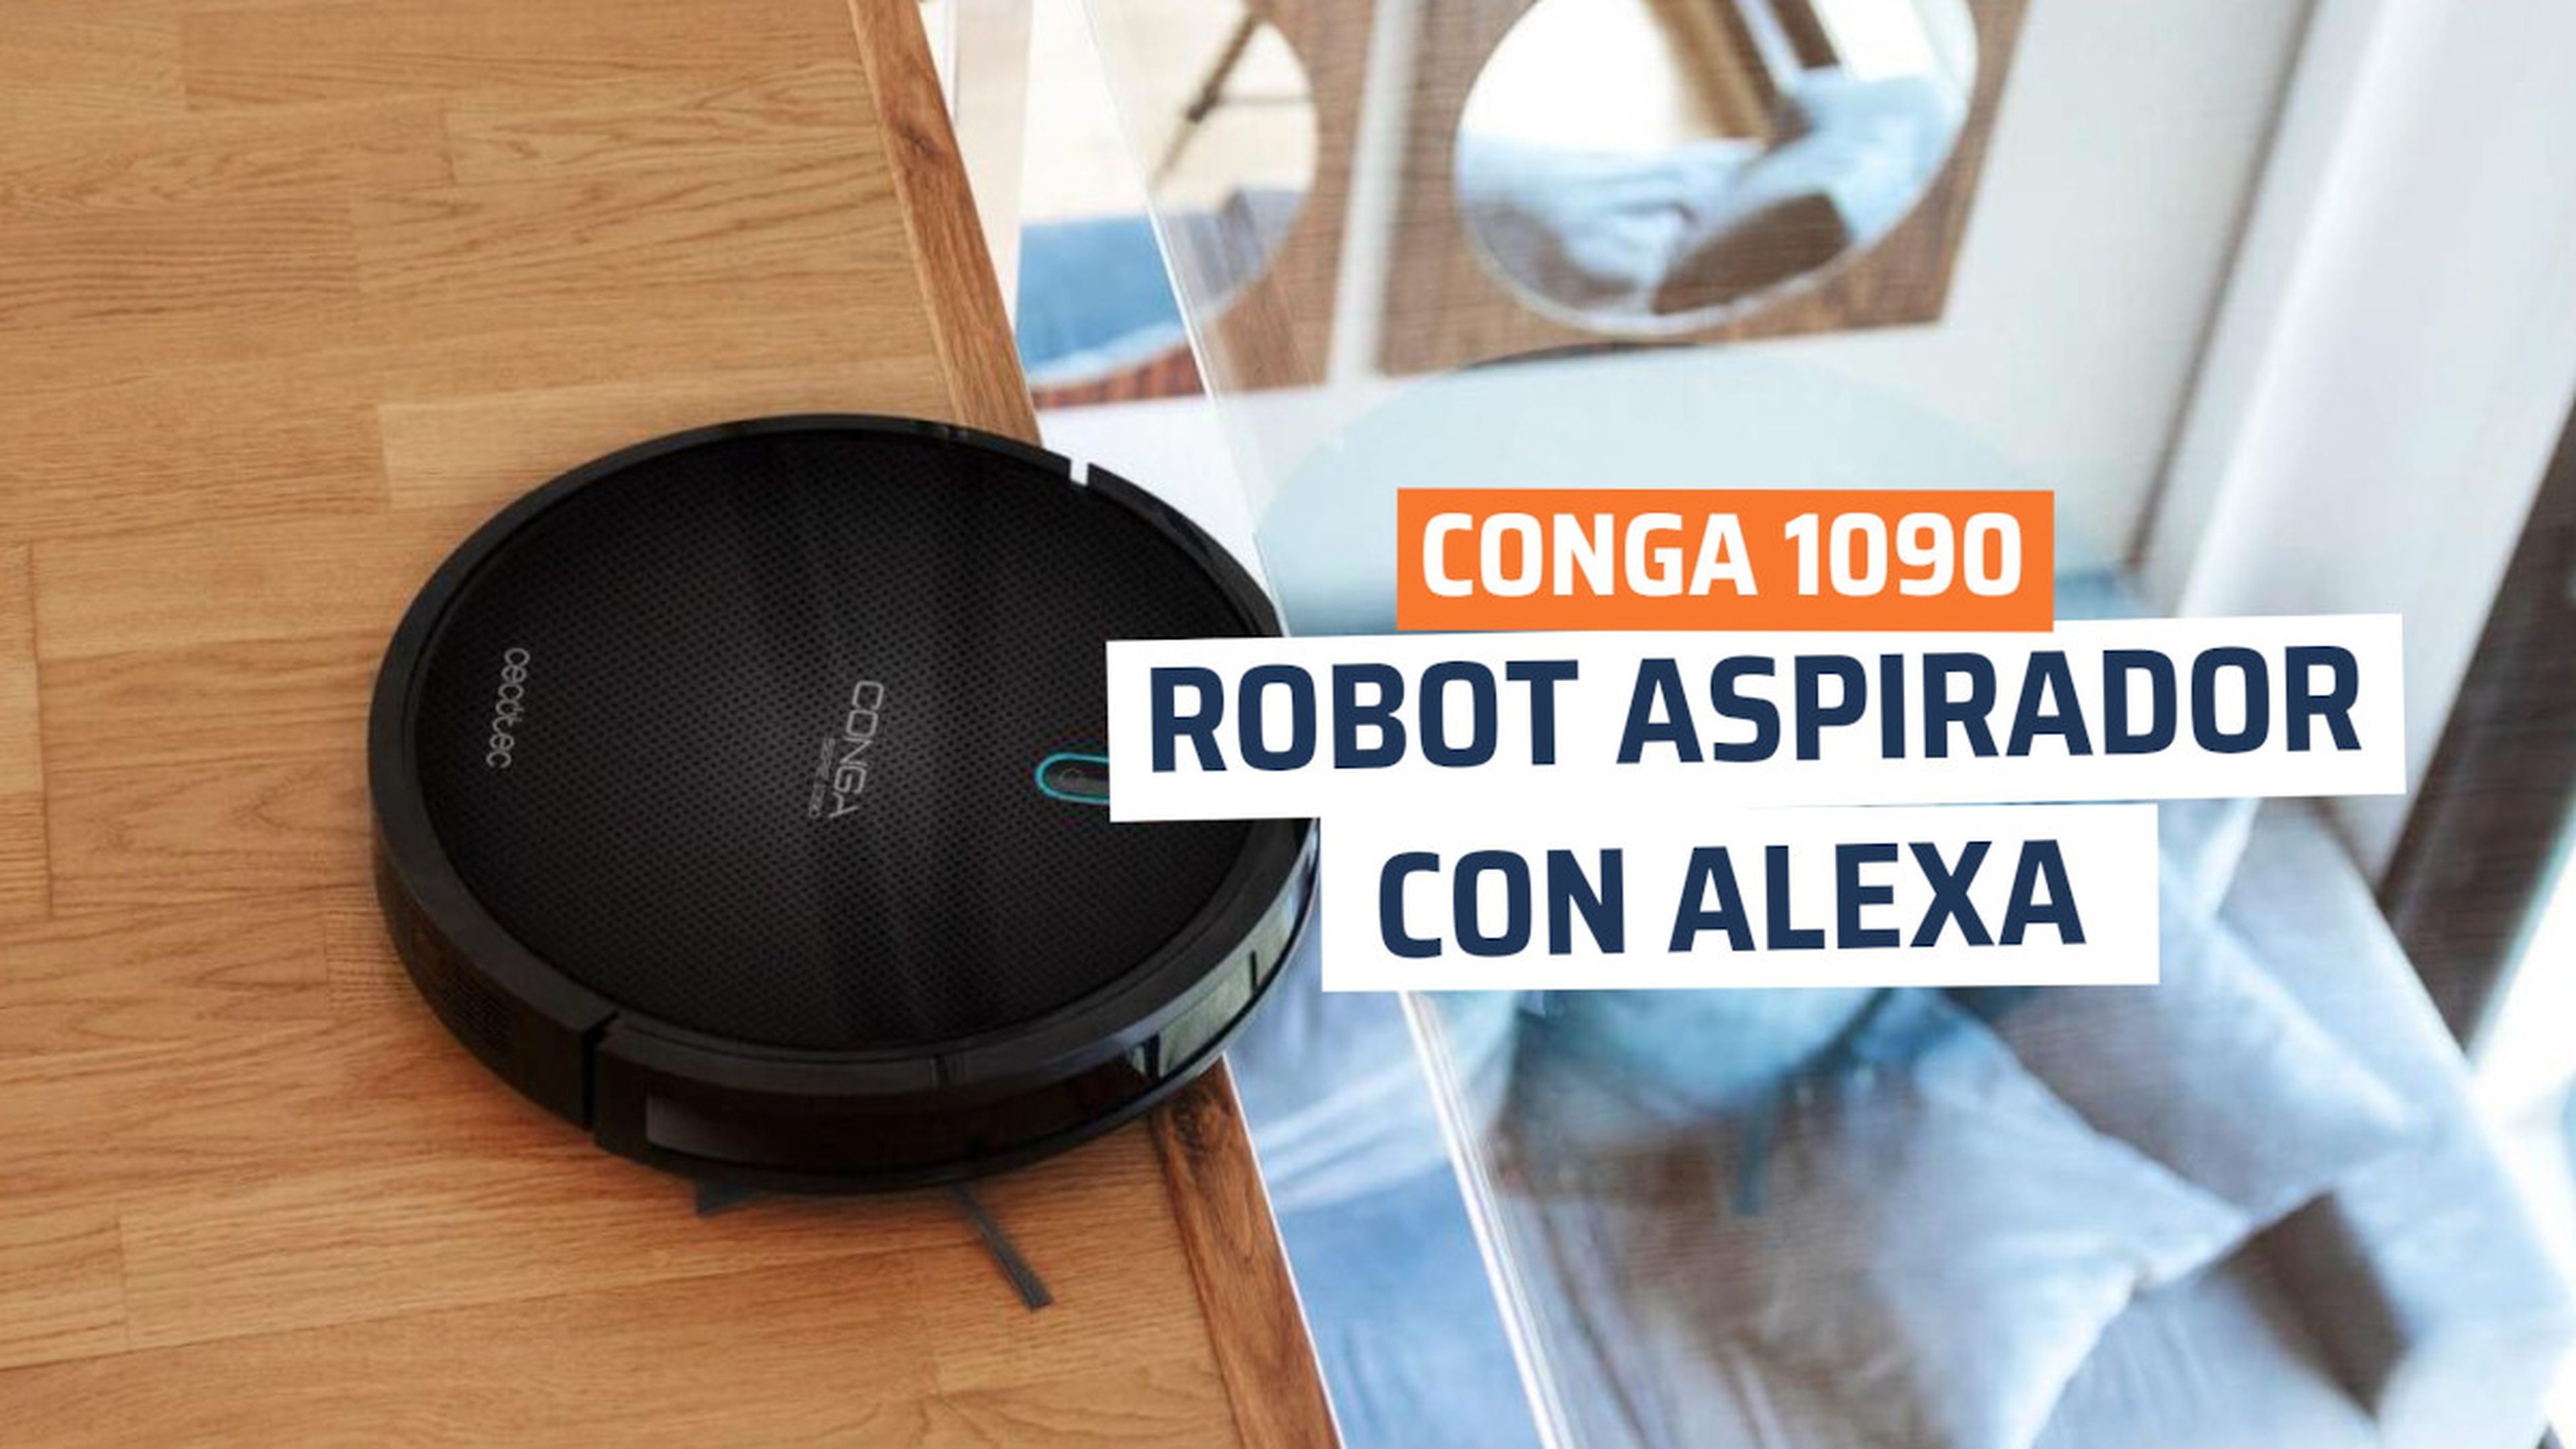 Casa entonces Cantidad de La Conga 1090 está en oferta por 169€ y tiene Alexa: no sólo aspira, sino  que también friega | Computer Hoy